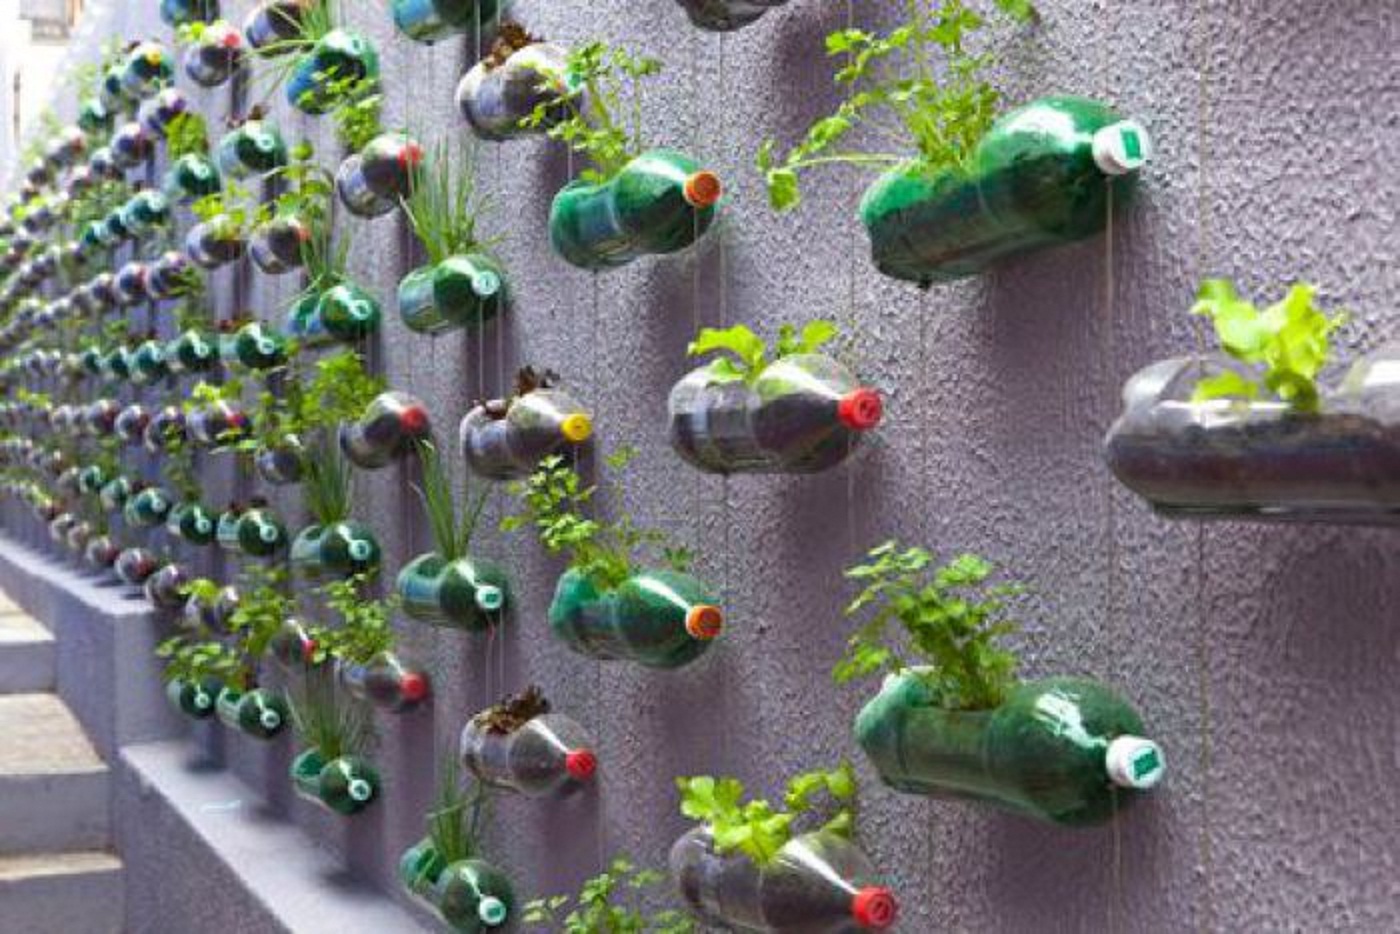 Haz tu granja vertical con botellas de plástico